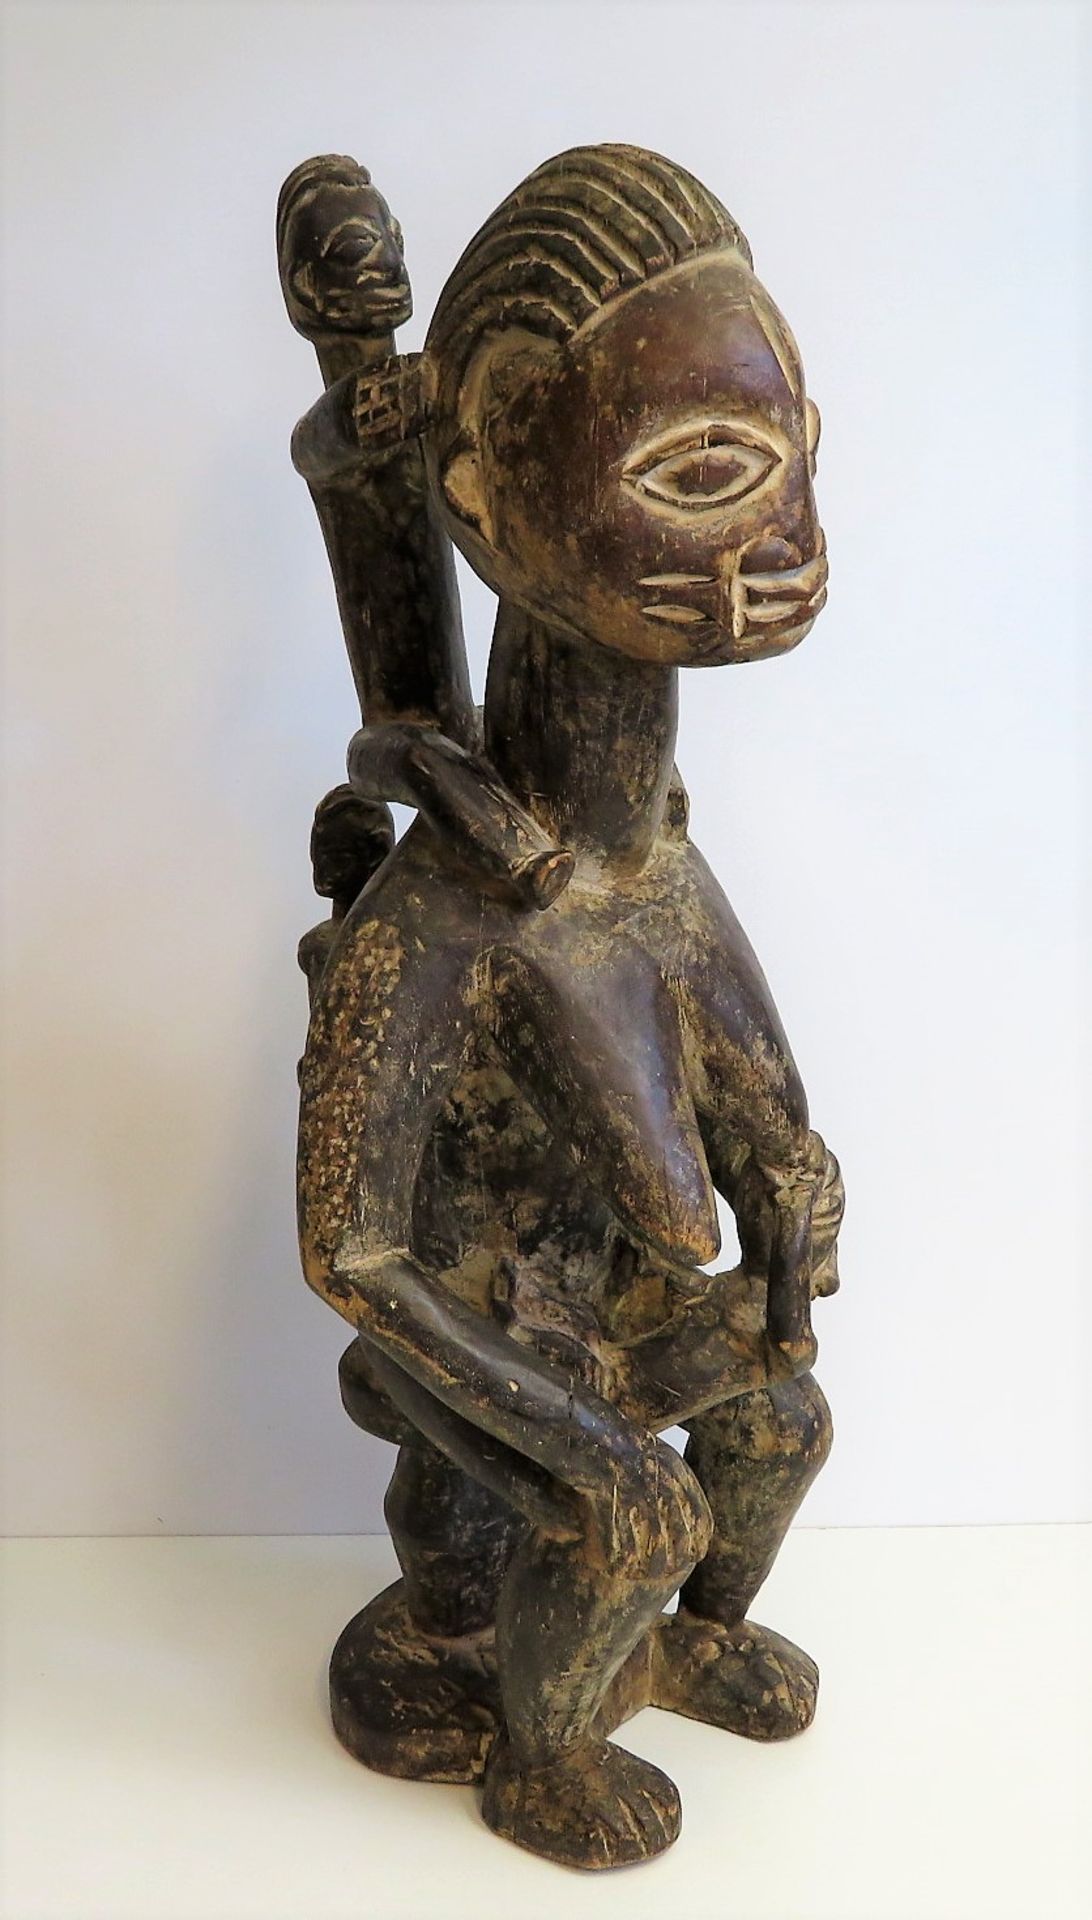 Fruchtbarkeitsfigur, Mutter mit drei Kindern, Afrika, Nigeria, Yoruba, Holz geschnitzt, h 70 cm, d 